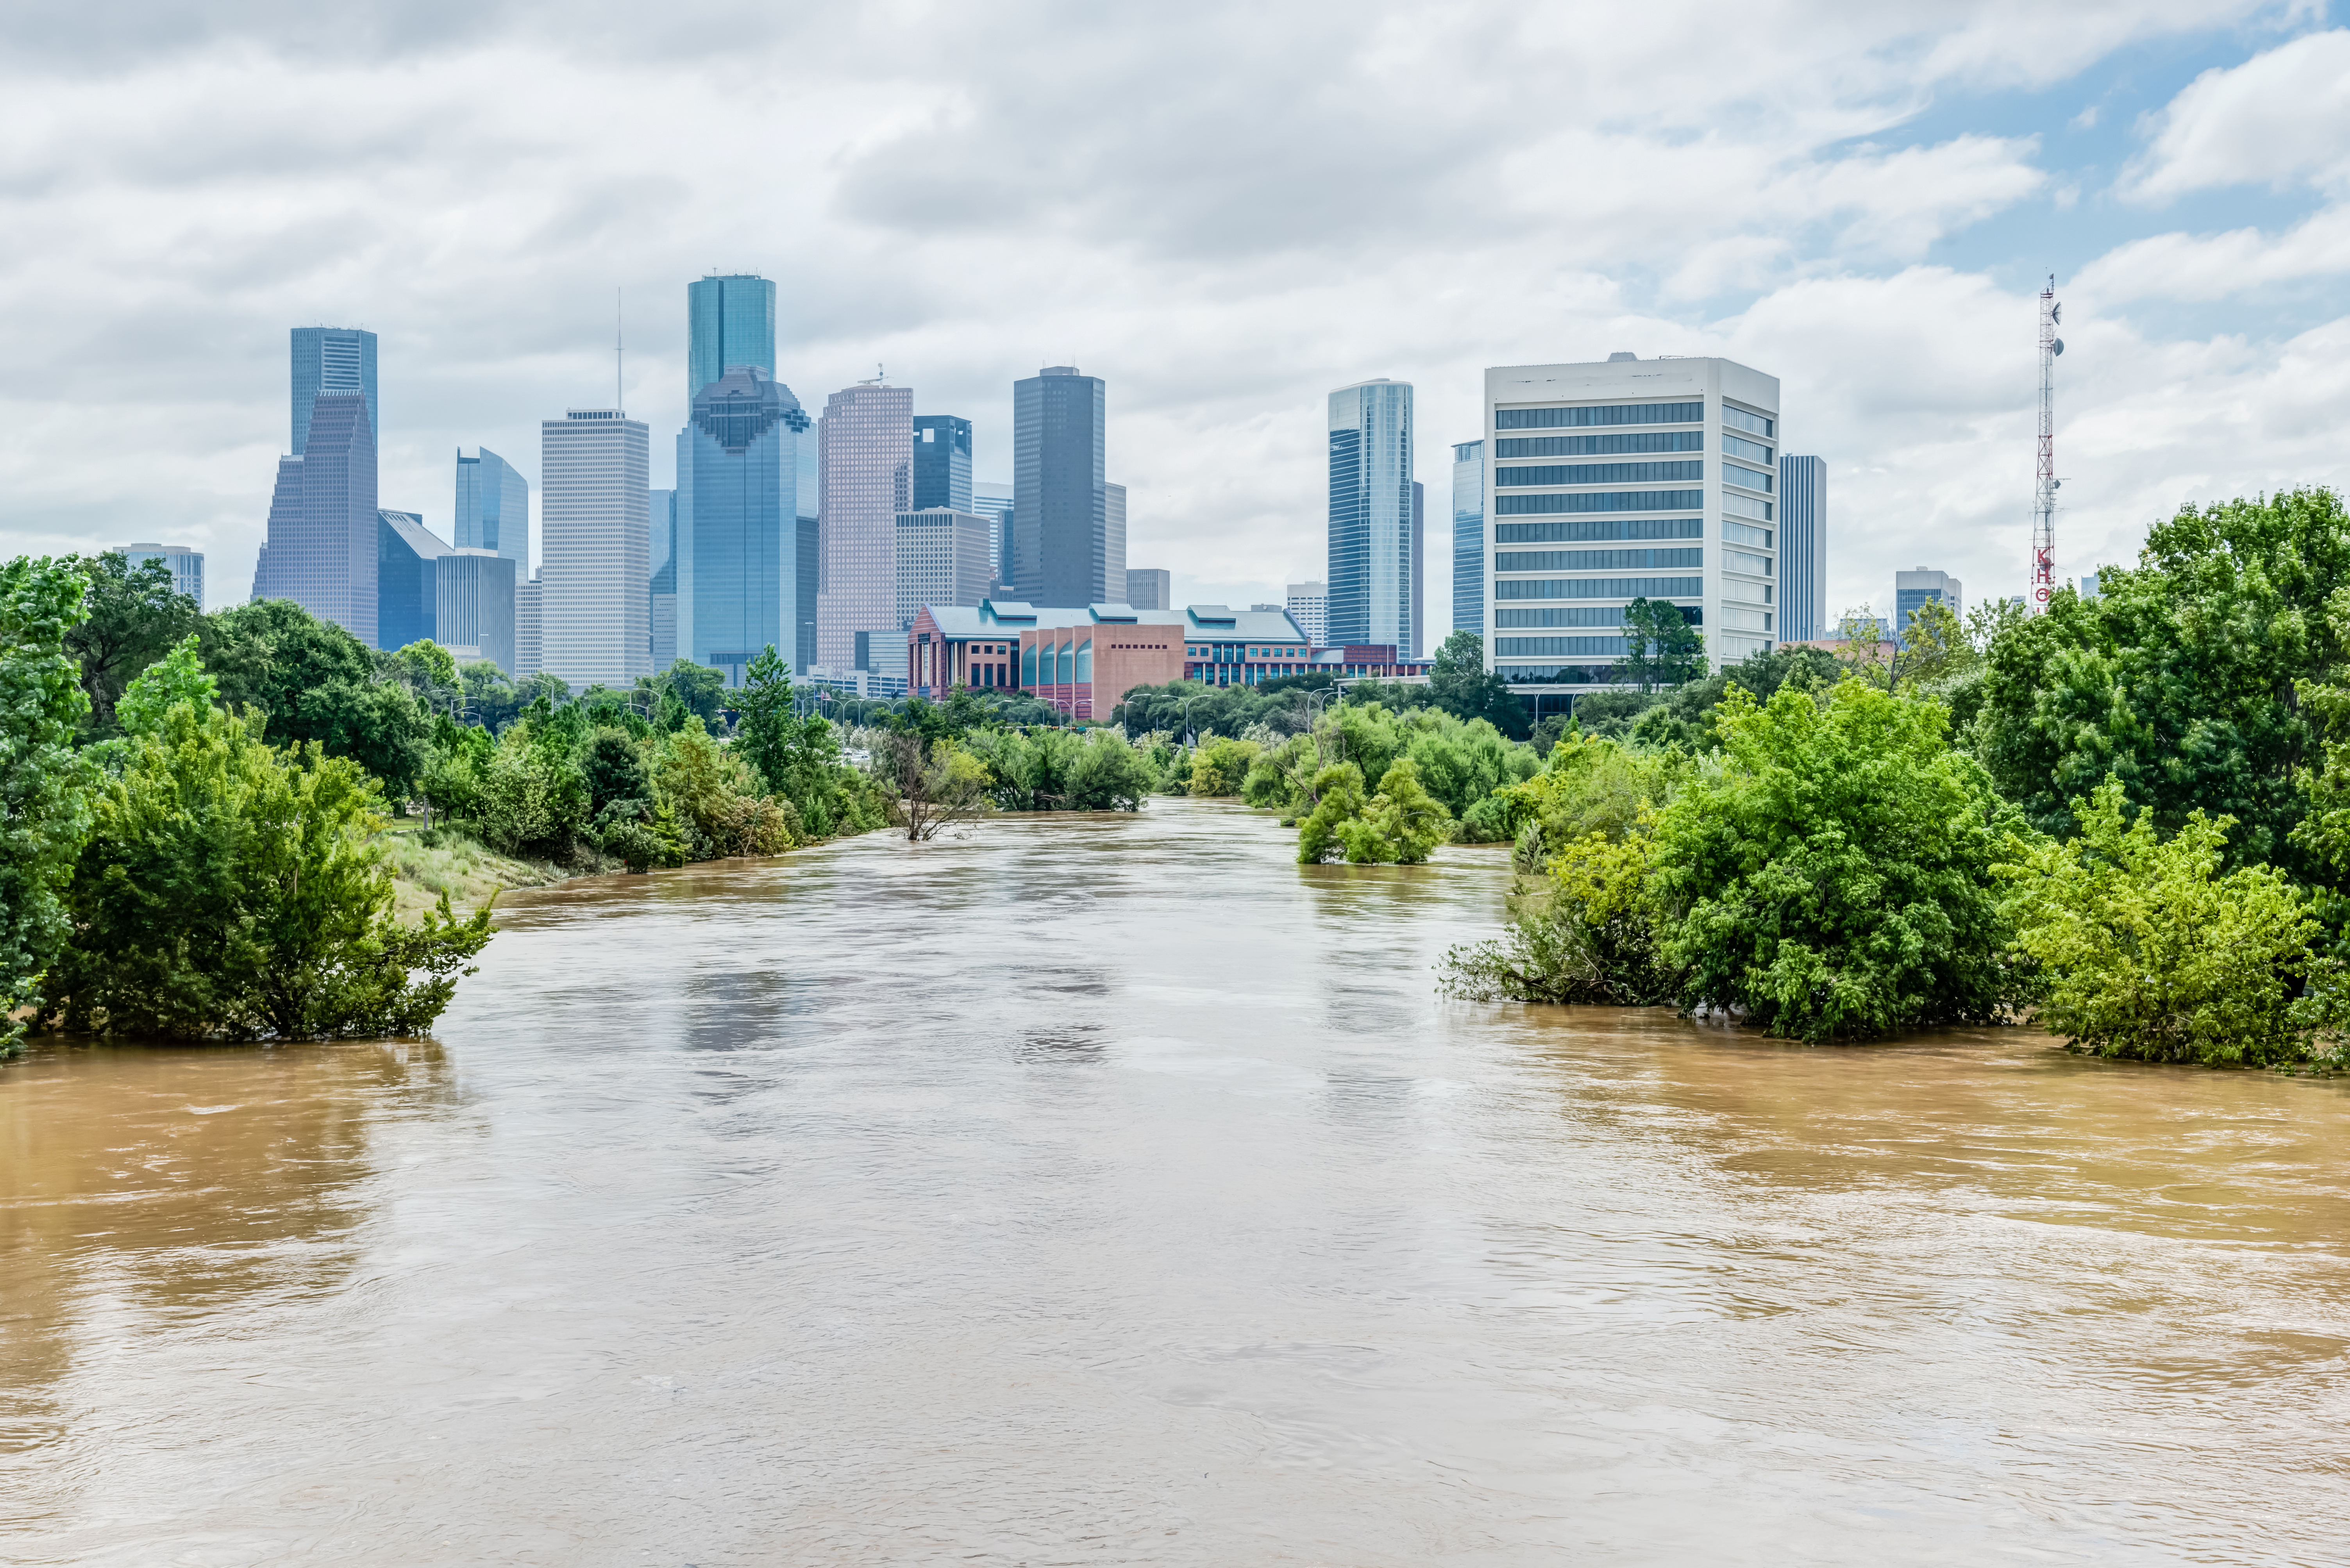 Πόσο καλά είστε προετοιμασμένοι για τον ενδεχόμενο κίνδυνο πλημμύρας στην περιοχή σας; 